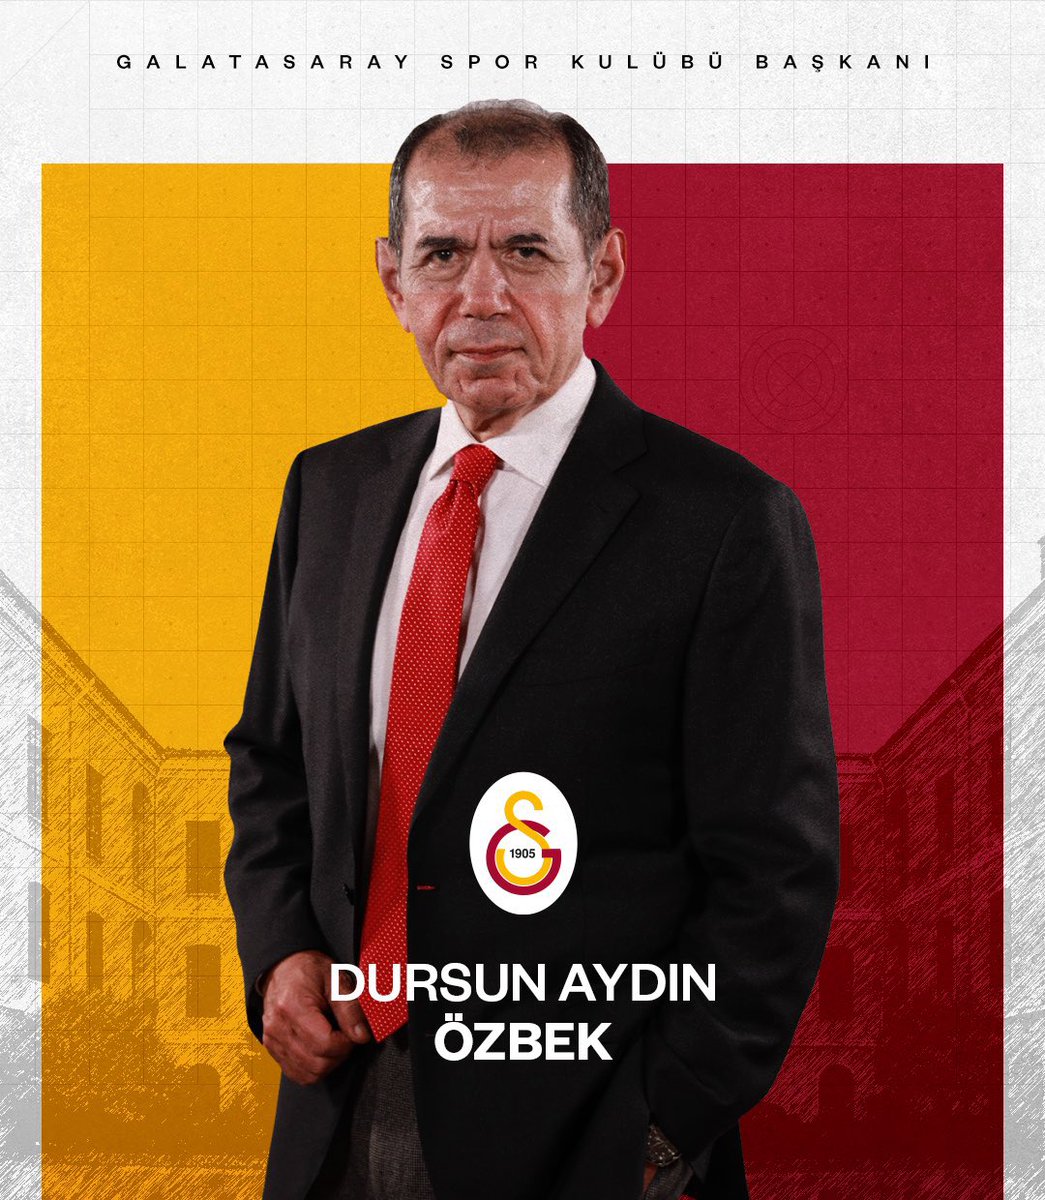 Galatasaray Spor Kulübü’nün yeniden başkanı seçilen Dursun Özbek’i tebrik ediyor, @GalatasaraySK camiasına hayırlı olmasını diliyorum.